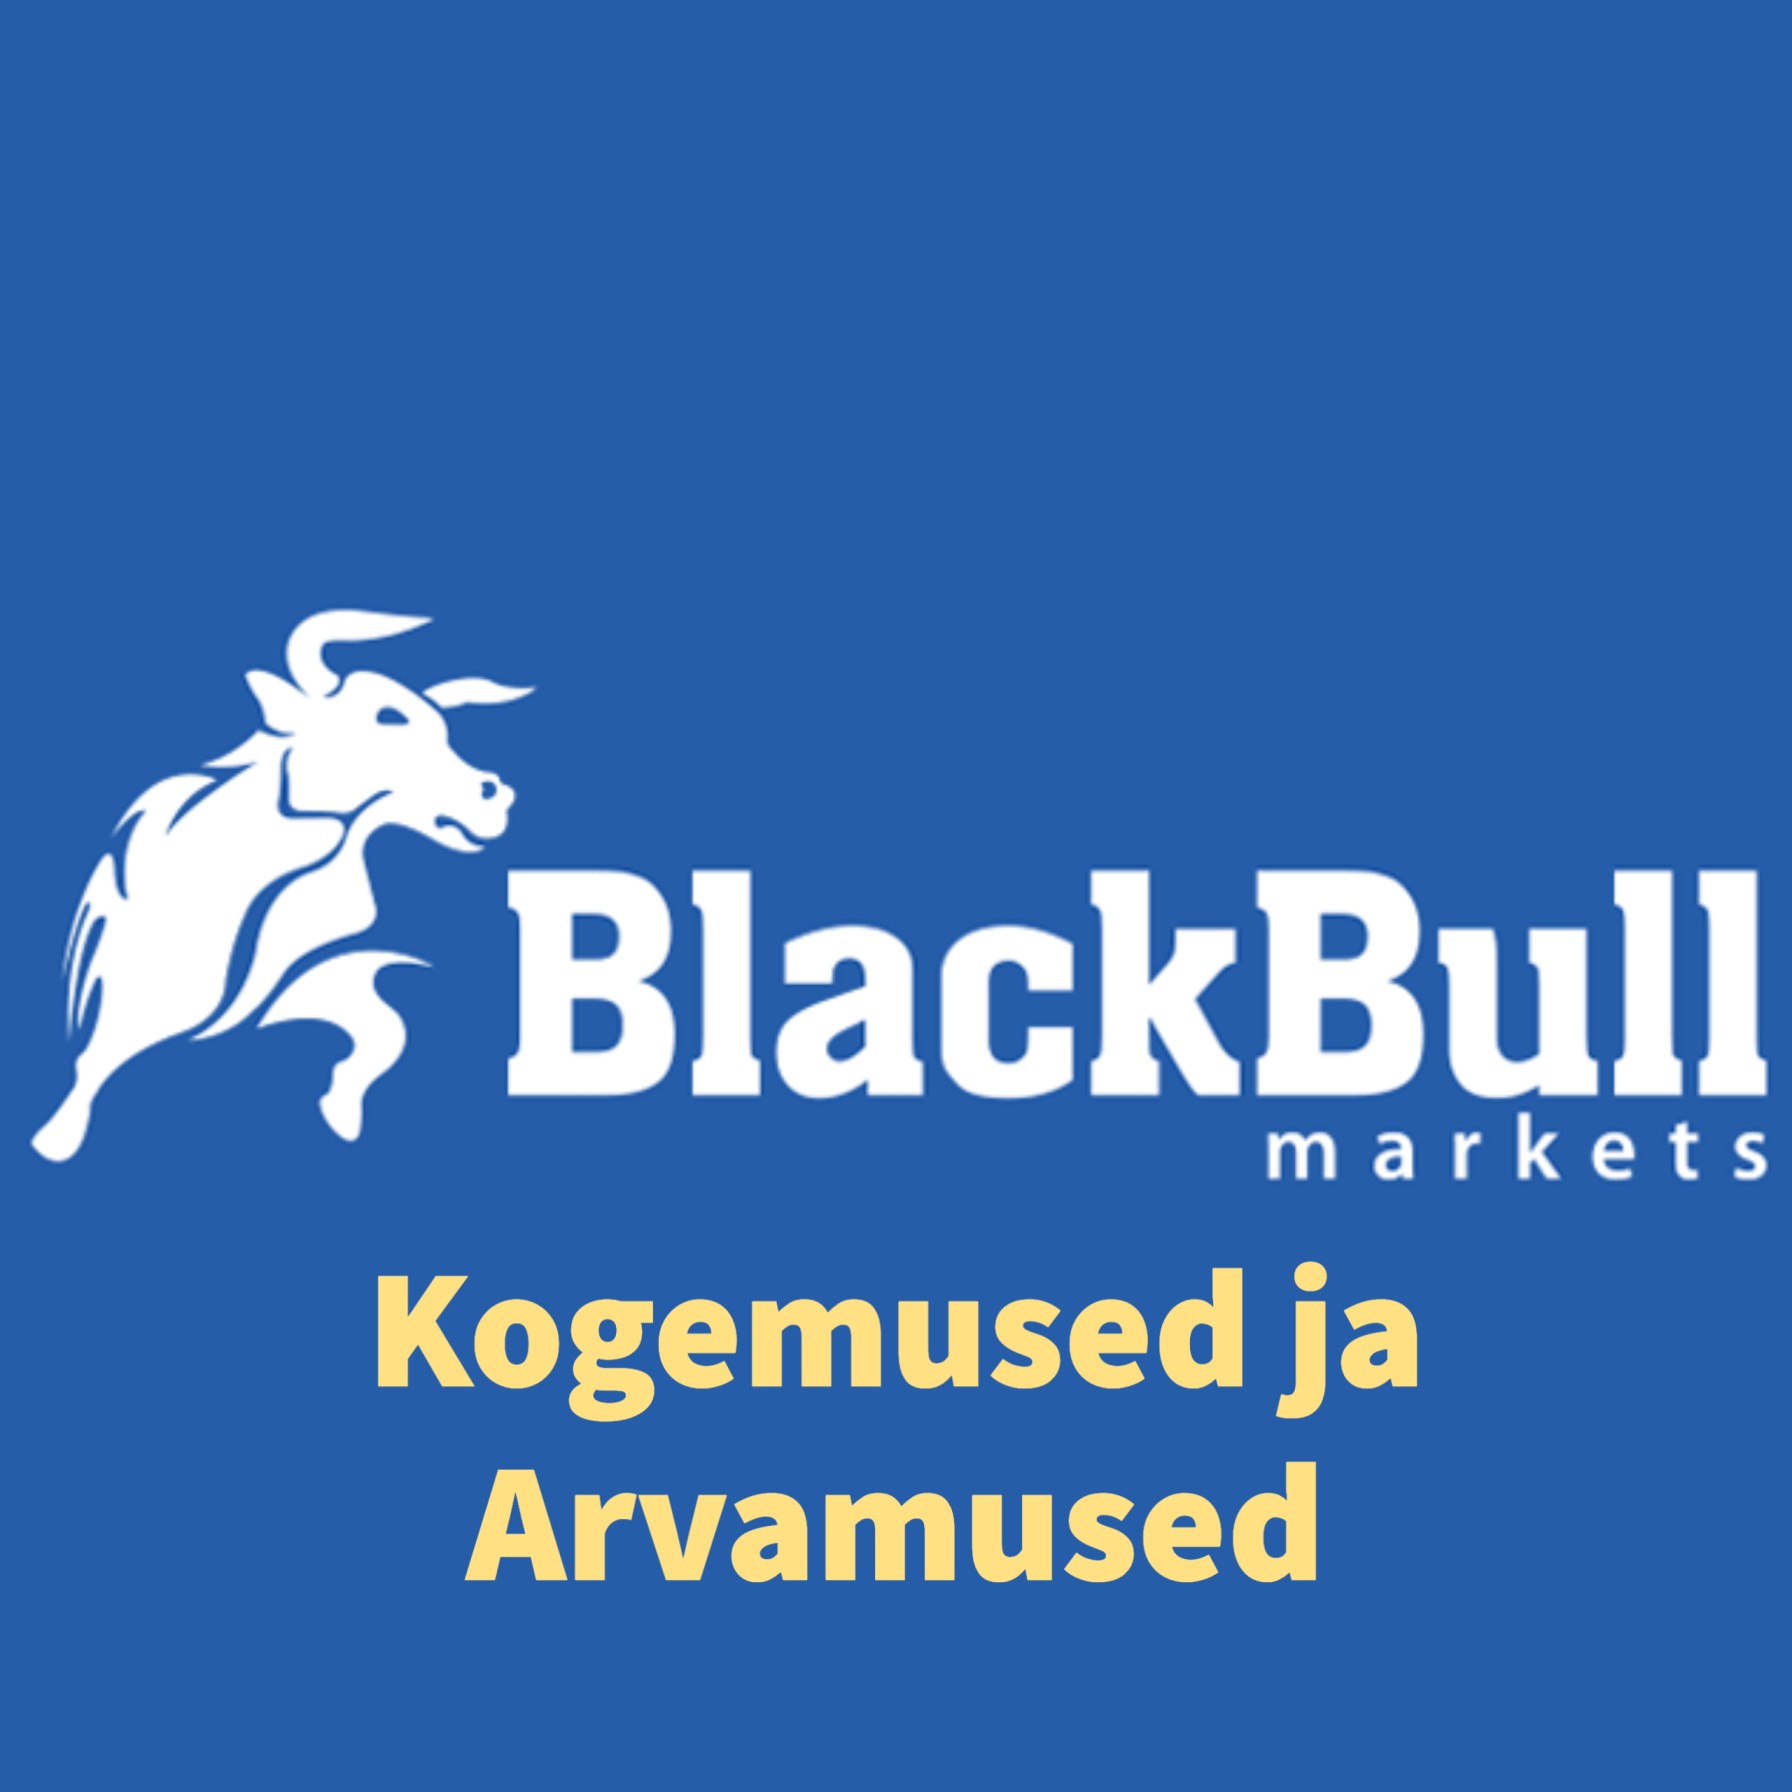 Blackbull Markets kogemused ja arvamused (1)